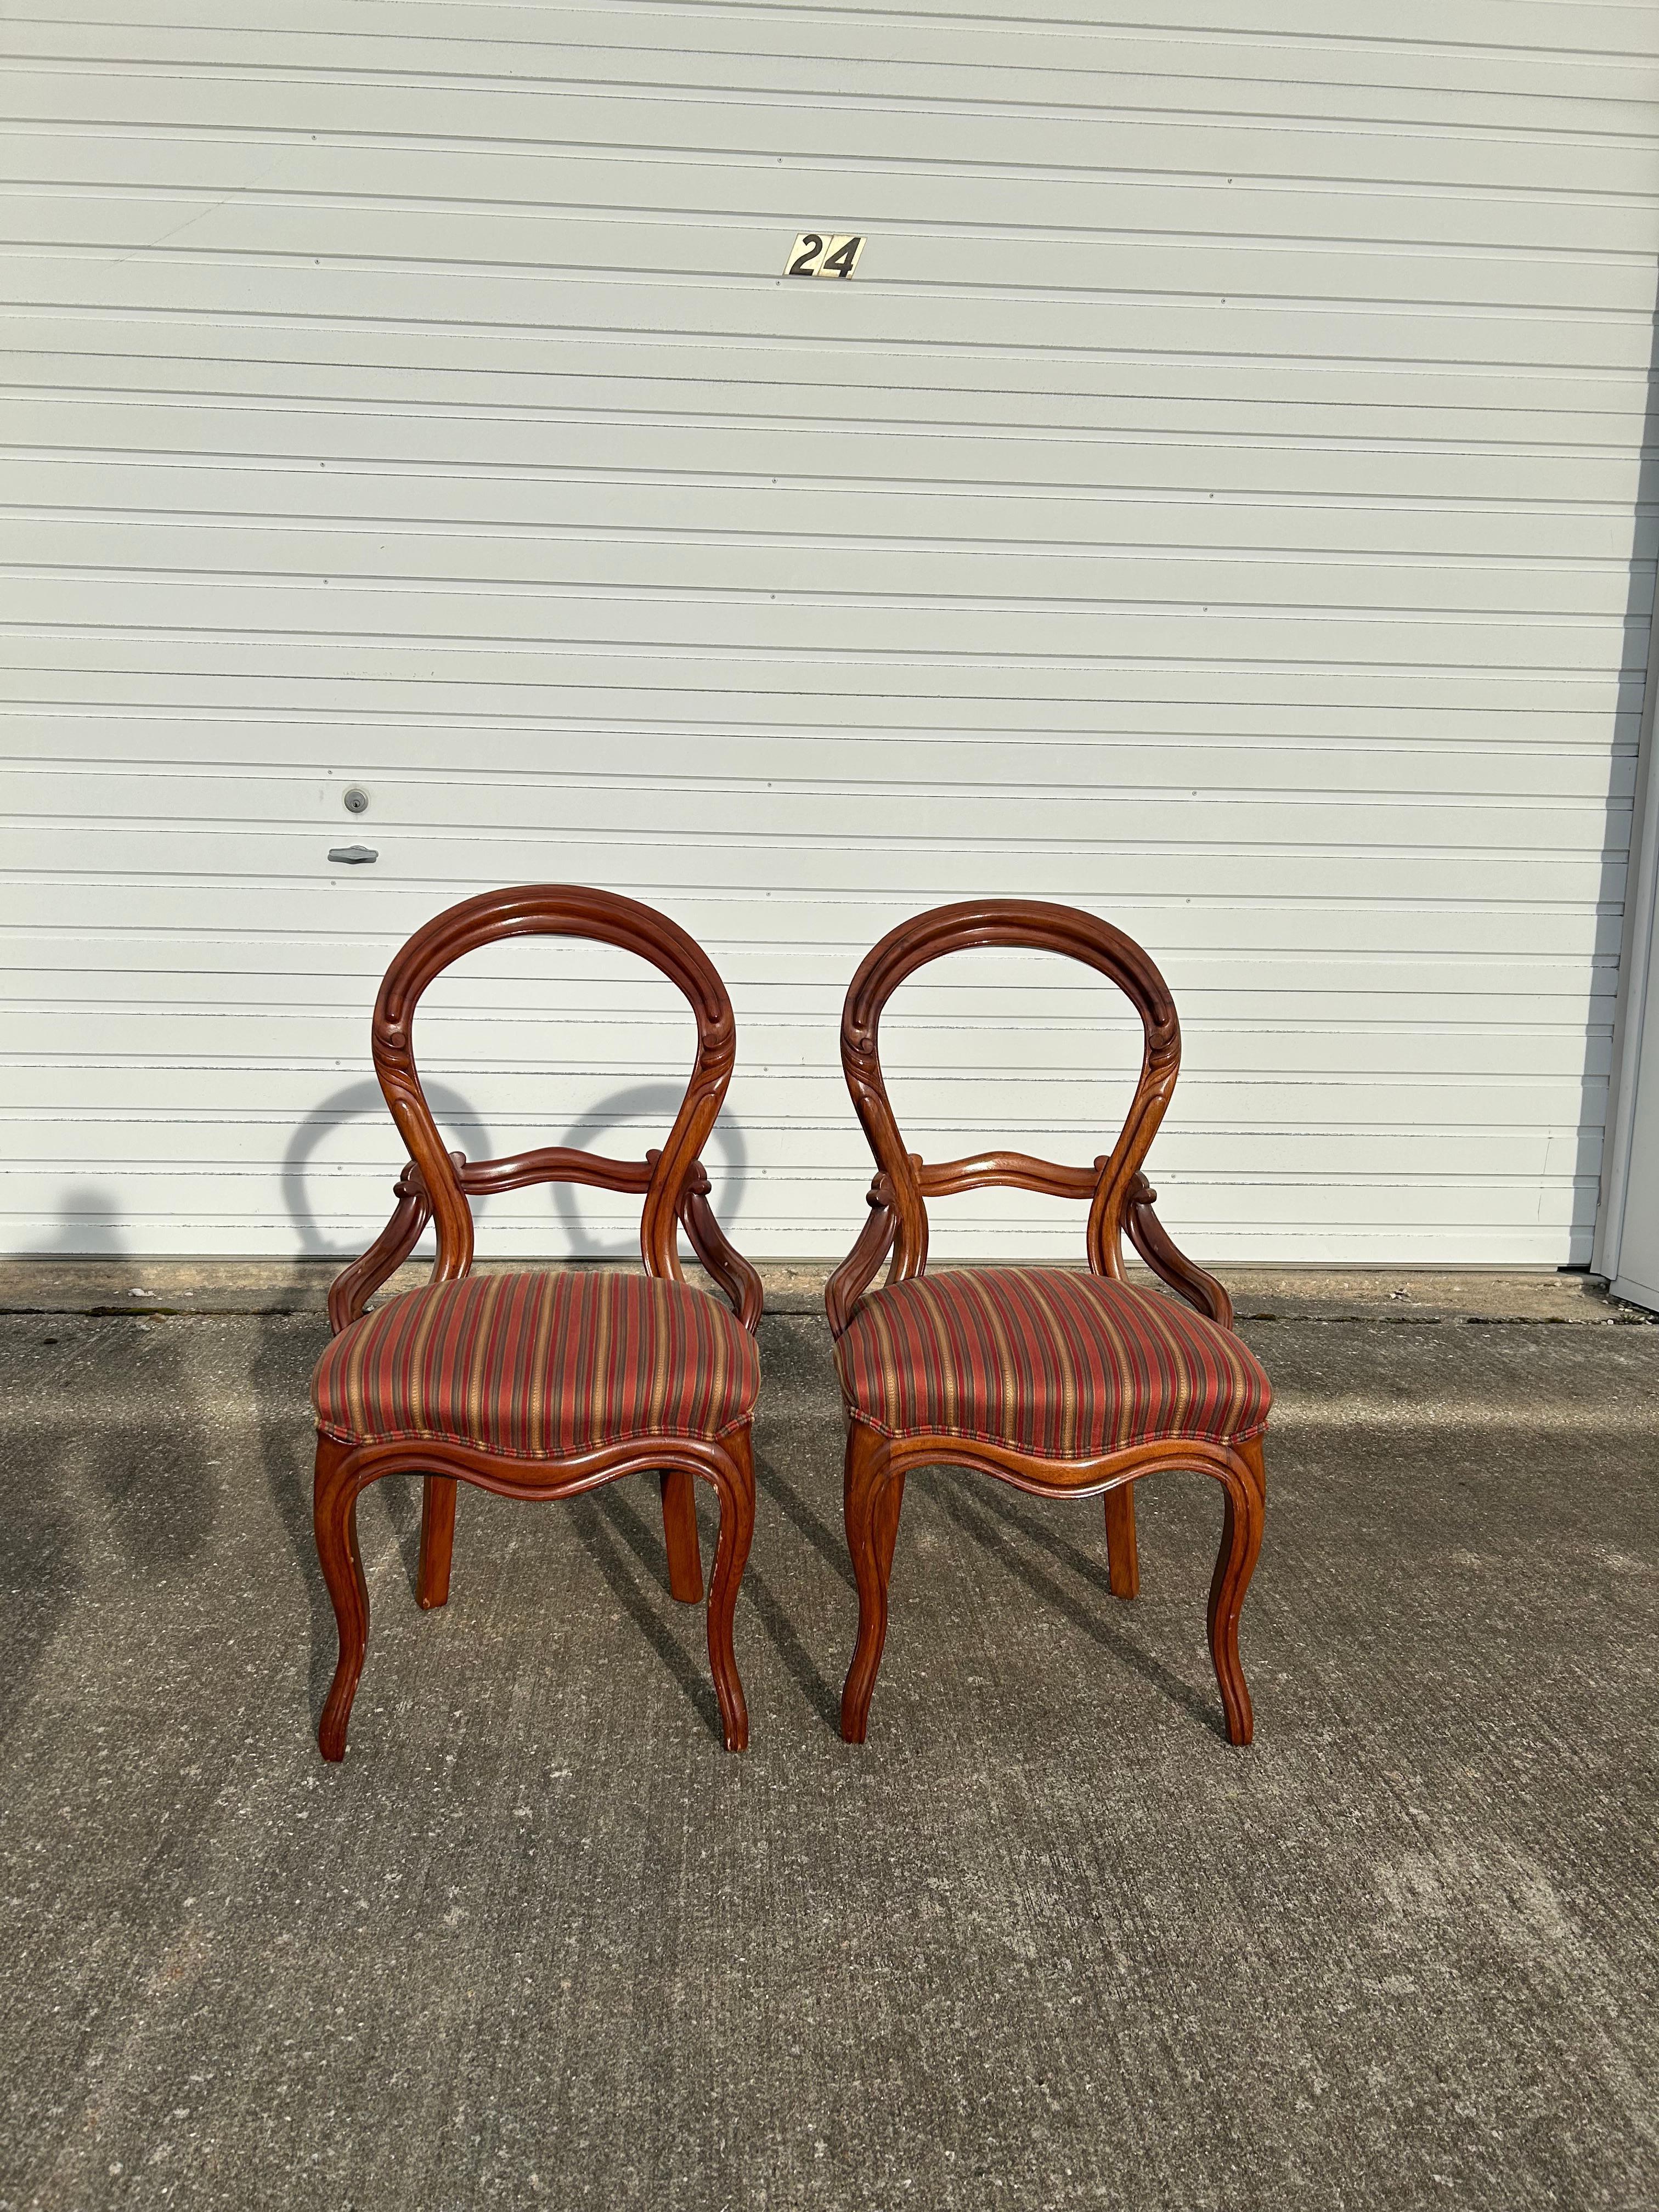 Paire de chaises d'appoint du début de l'époque victorienne dans le style de John Henry Belter. Ces chaises sont très uniques et ont un très beau tissu, il ne semble pas y avoir de taches ou de déchirures. Le bois a besoin d'être retouché en raison